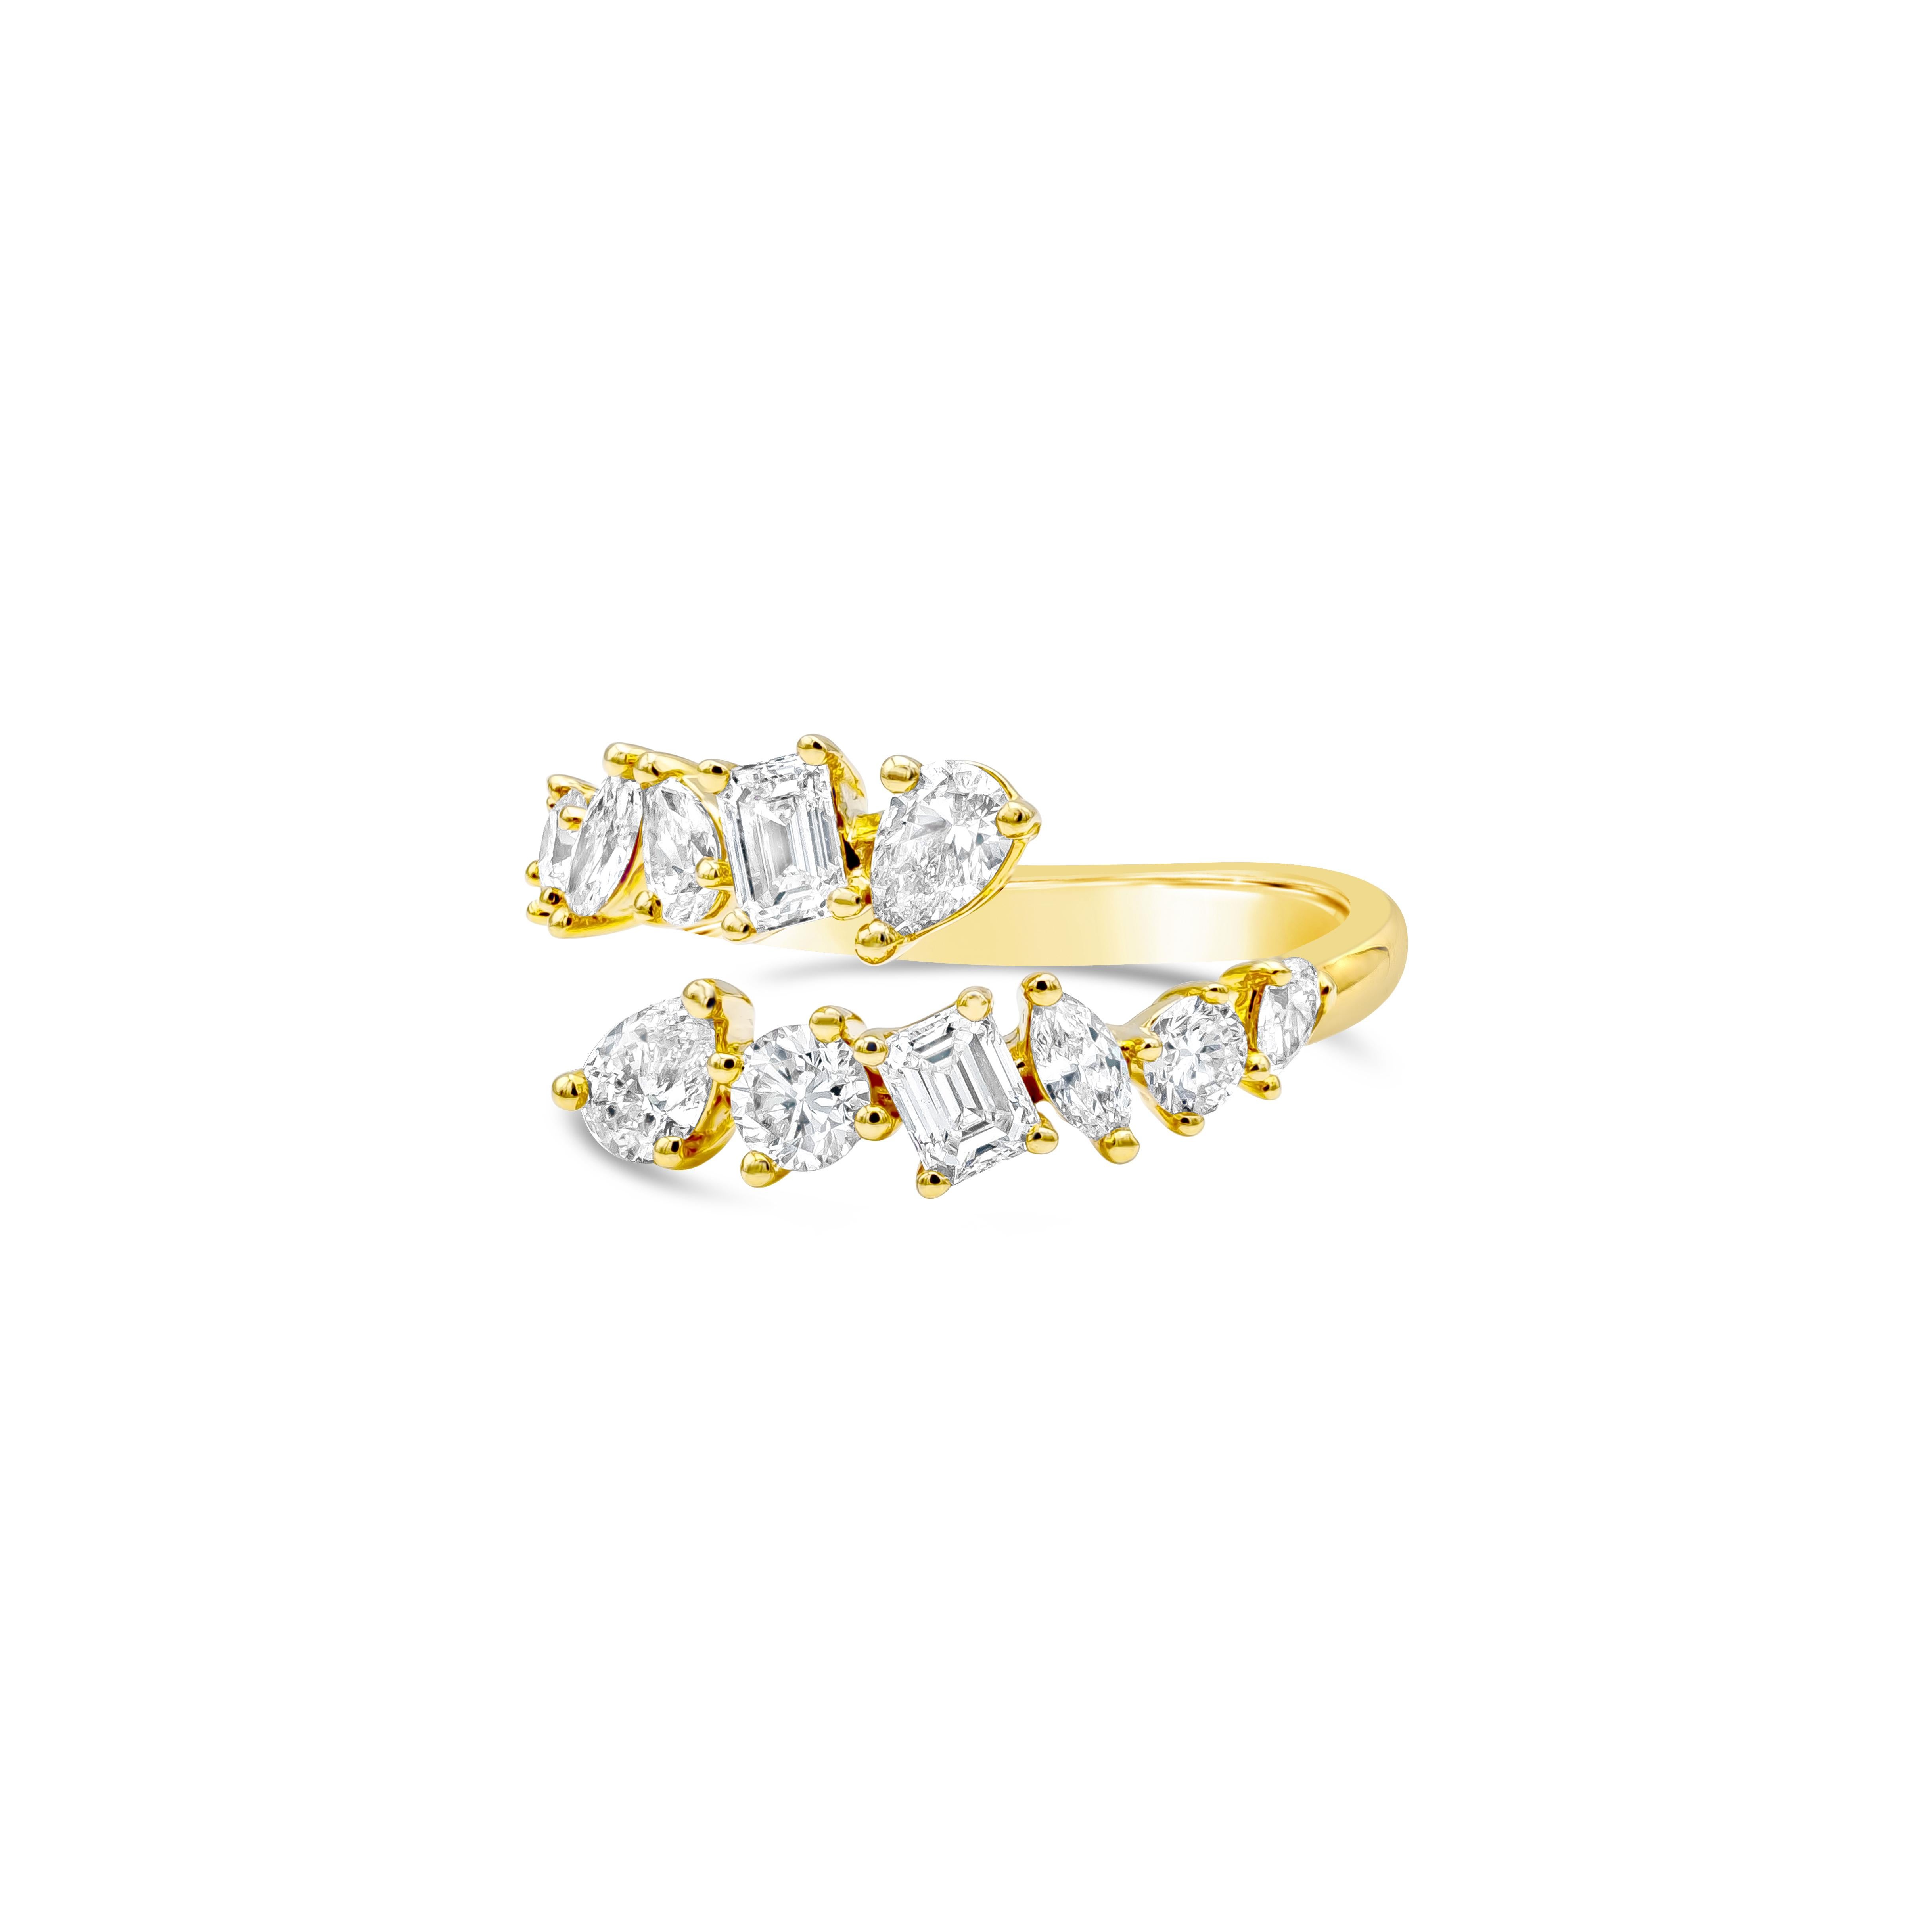 Ein sehr schicker, unverwechselbarer und modischer Ring, der eine Reihe von Diamanten mit gemischtem Schliff in einem zweireihigen, ineinander verschlungenen Design zeigt, das aus birnenförmigem, rundem Brillant-, Marquise- und Smaragdschliff